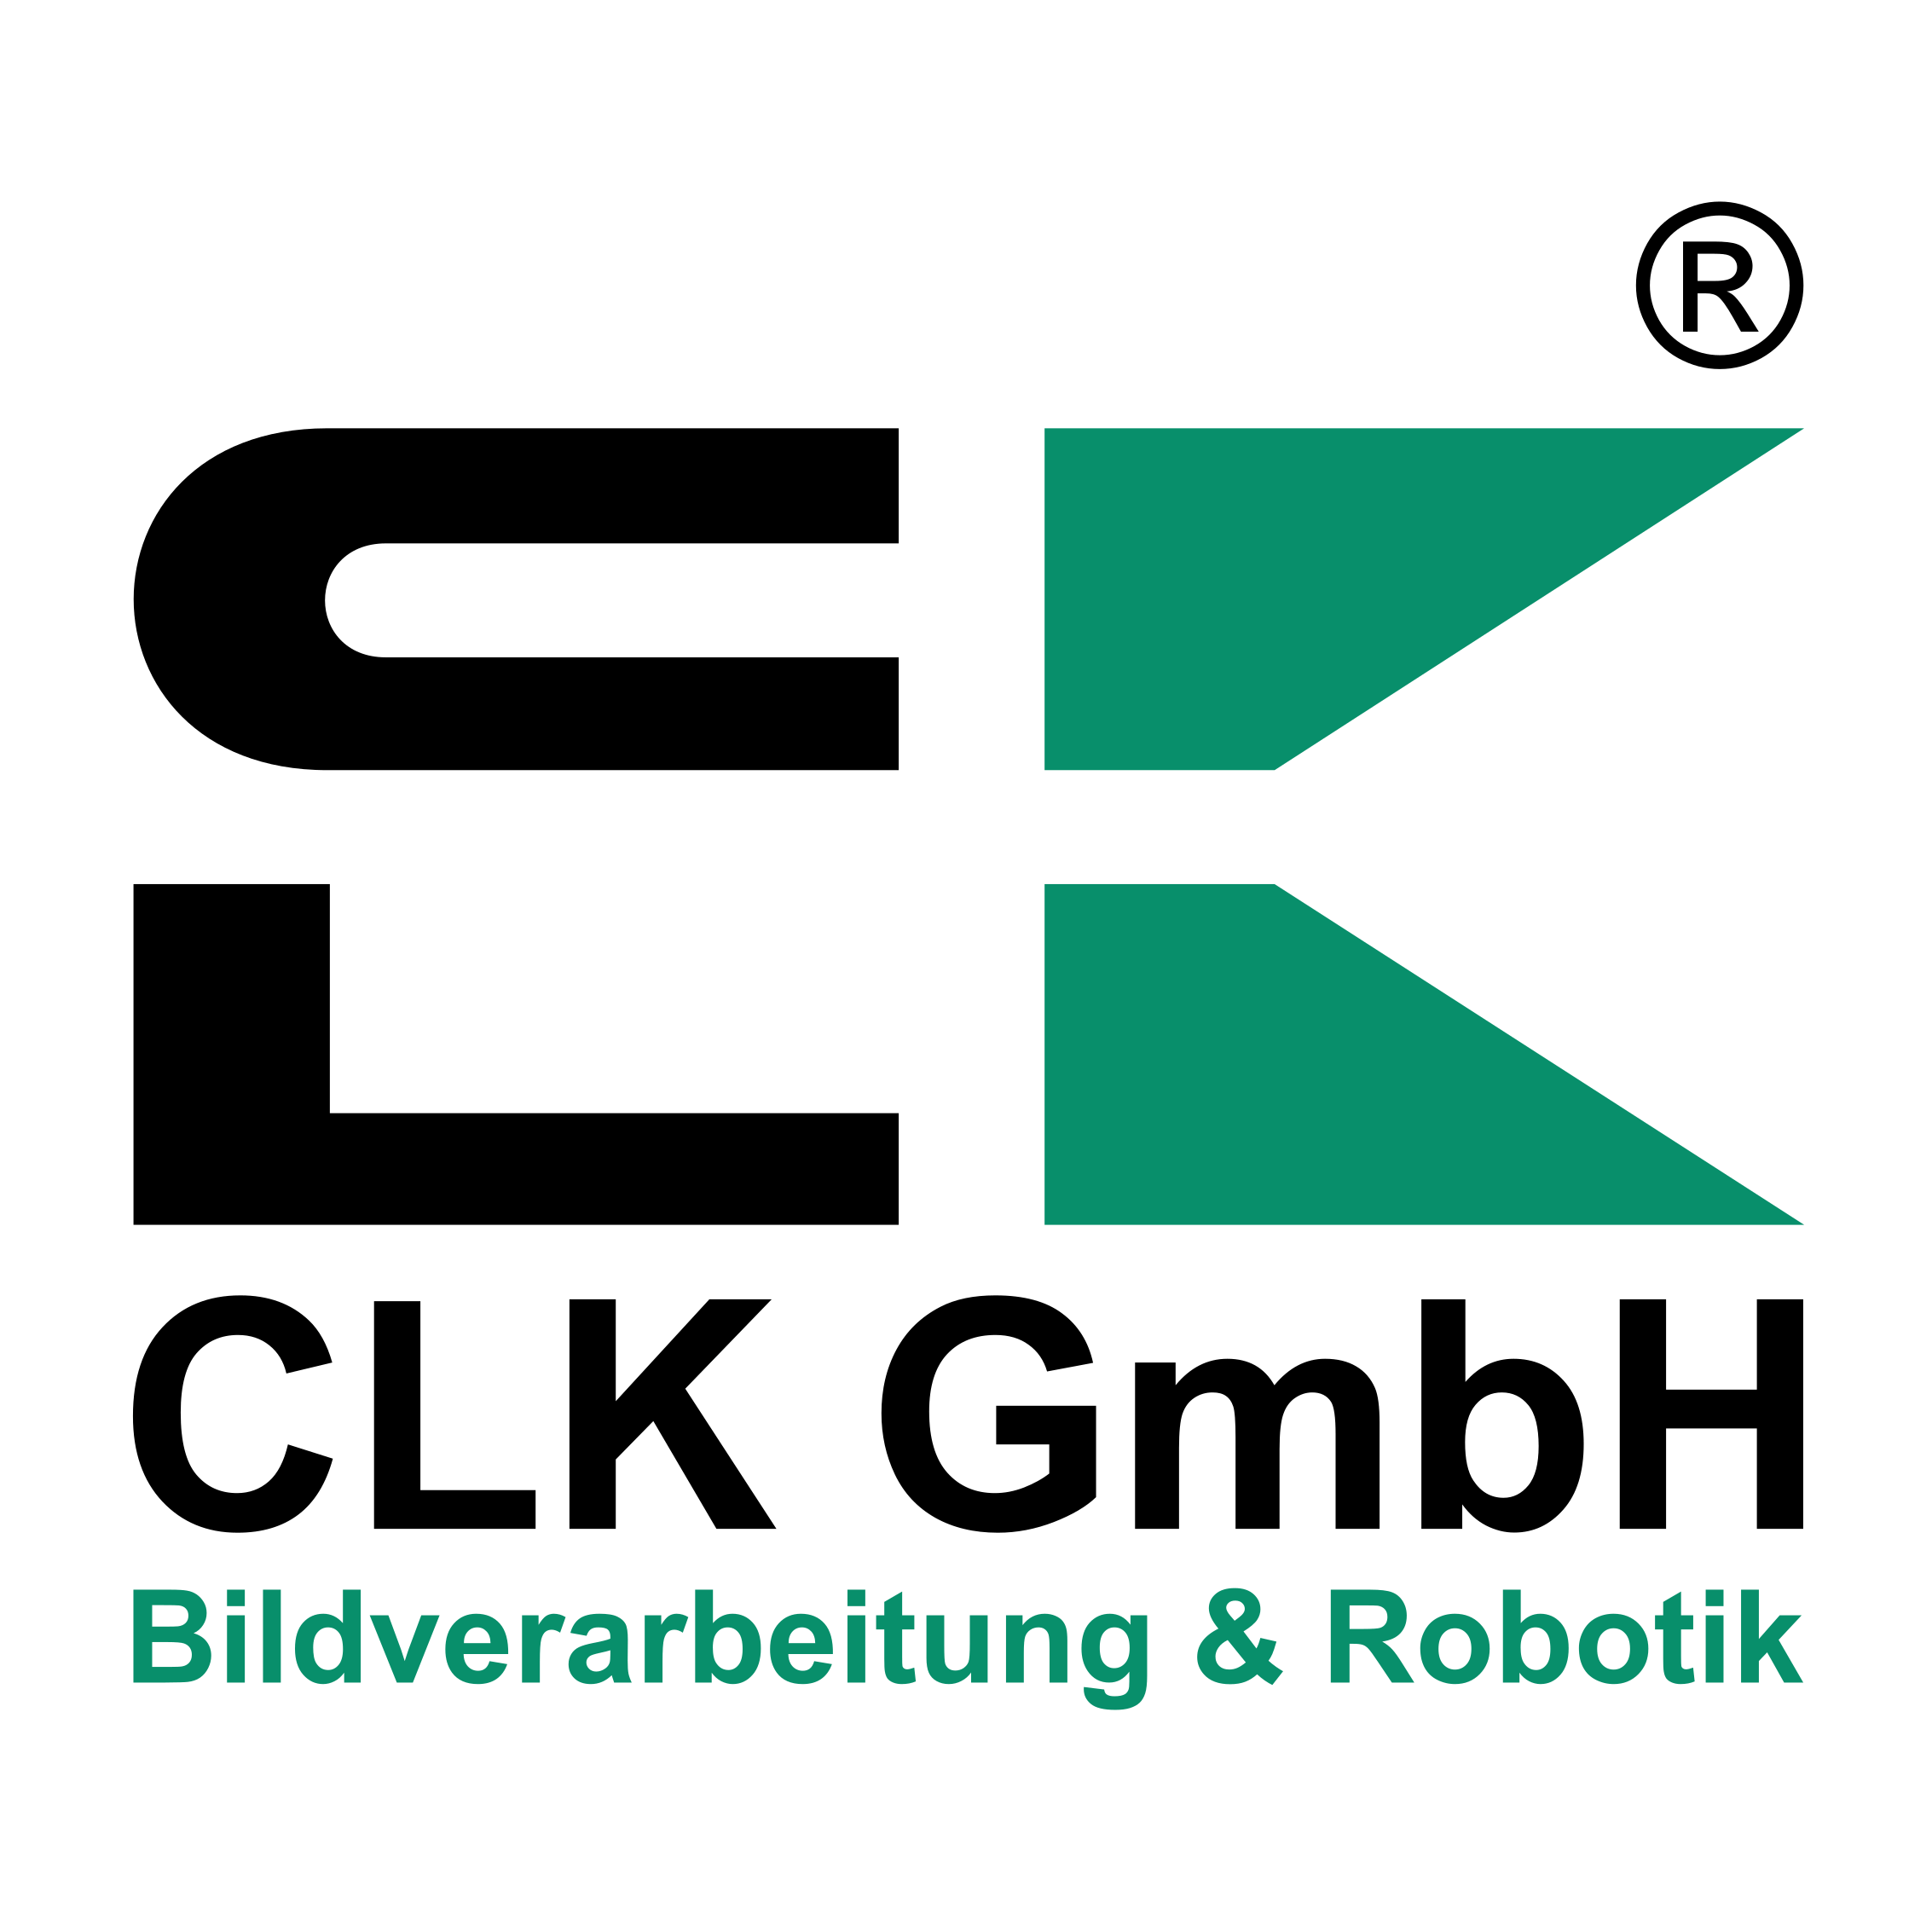 CLK GmbH